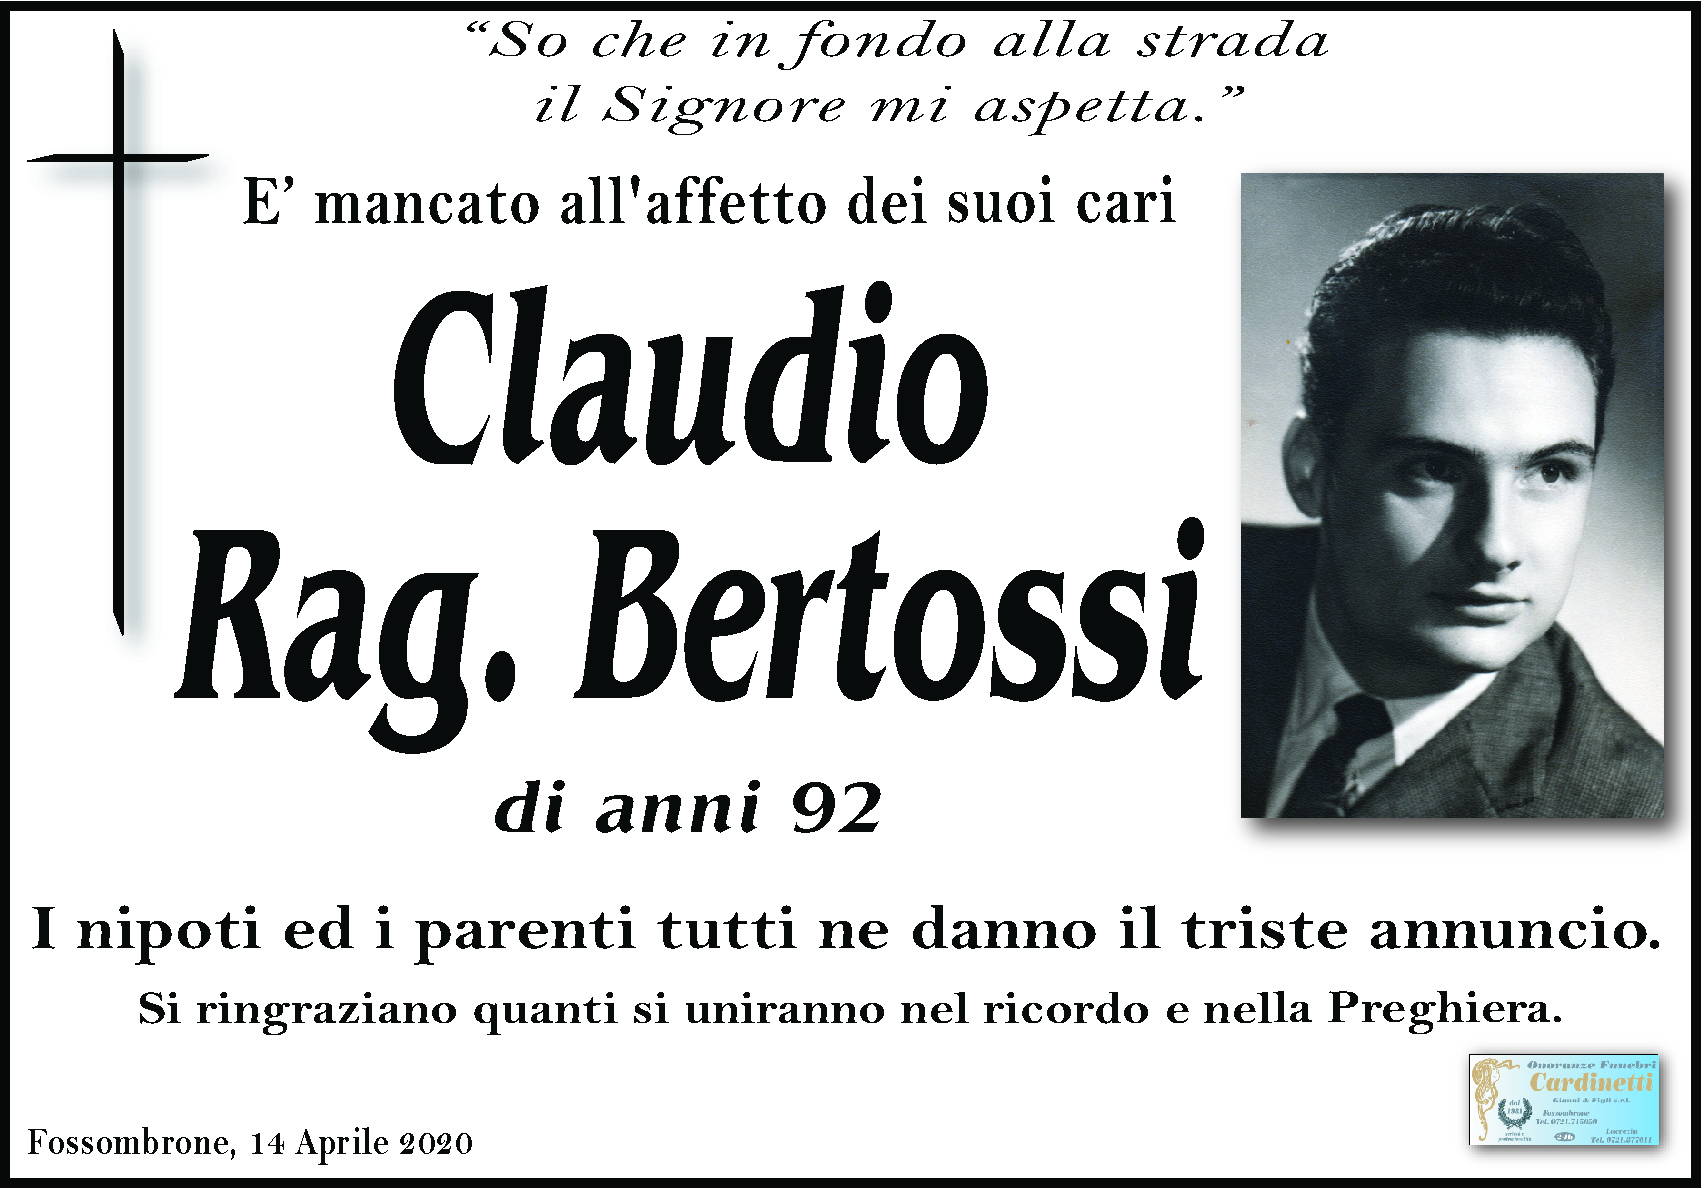 Claudio Bertossi